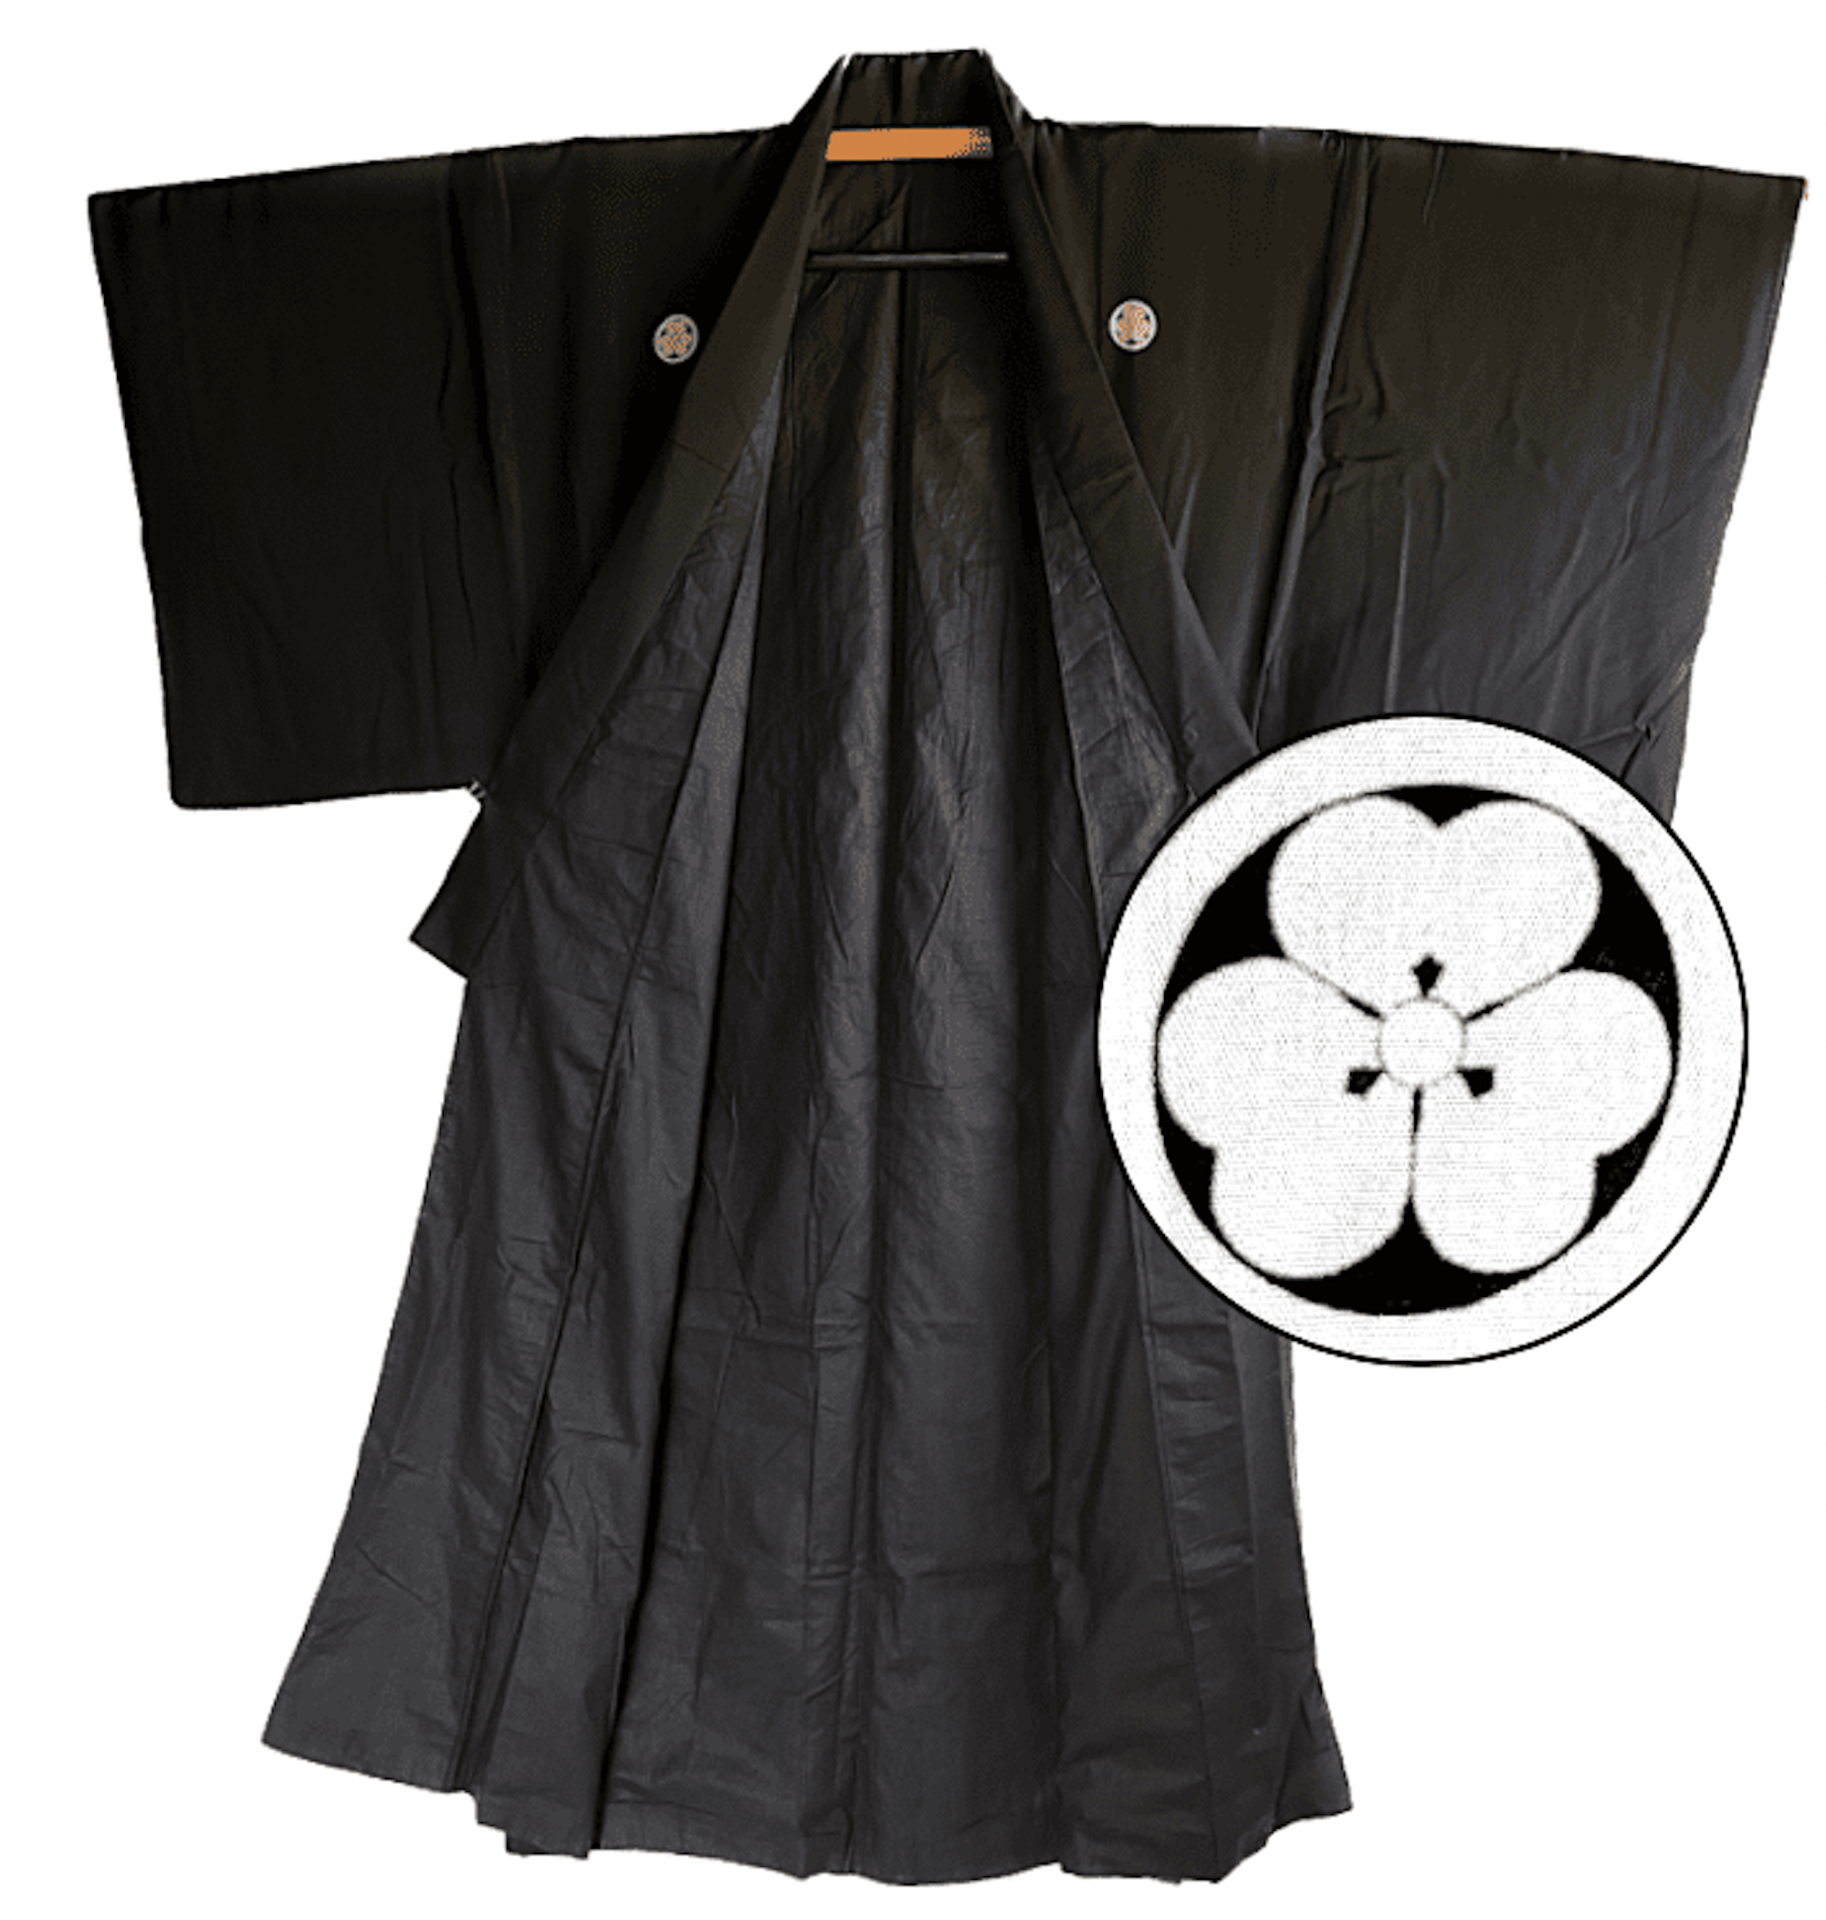 Antique kimono japonais soie noire ume montsuki homme 1